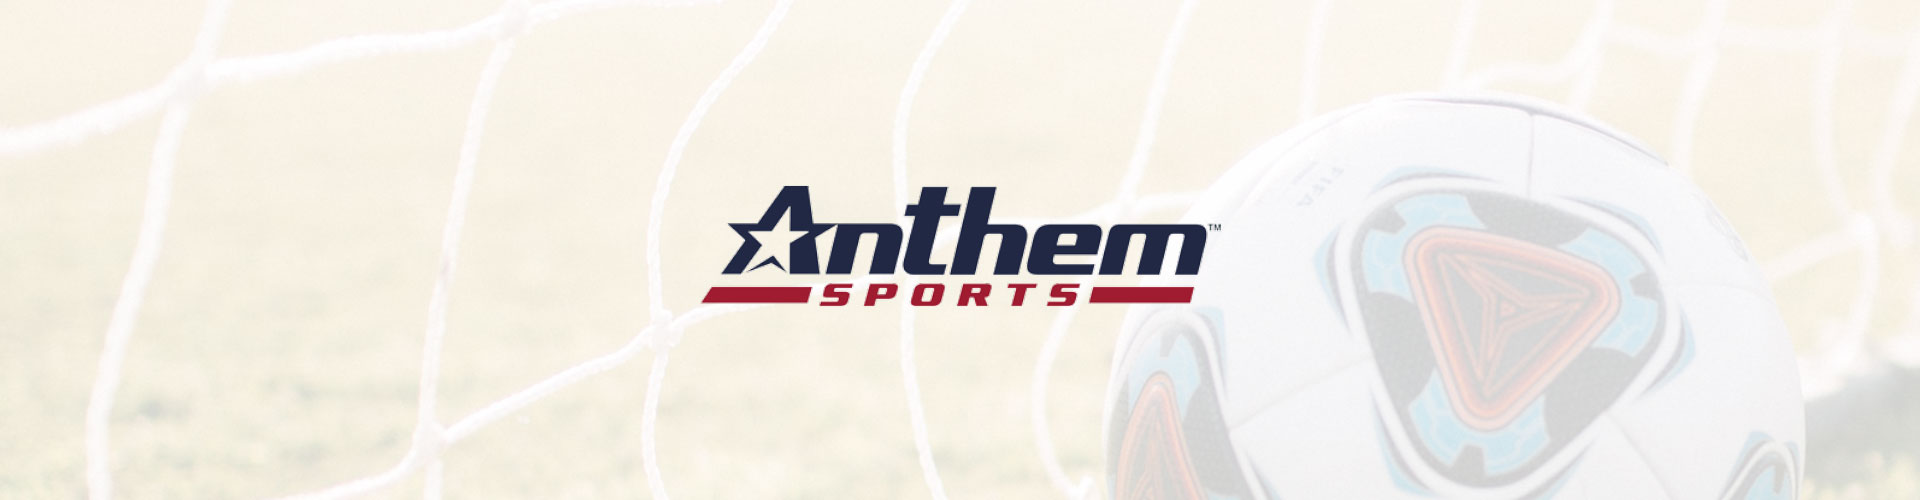 Case Study - Anthem Sports